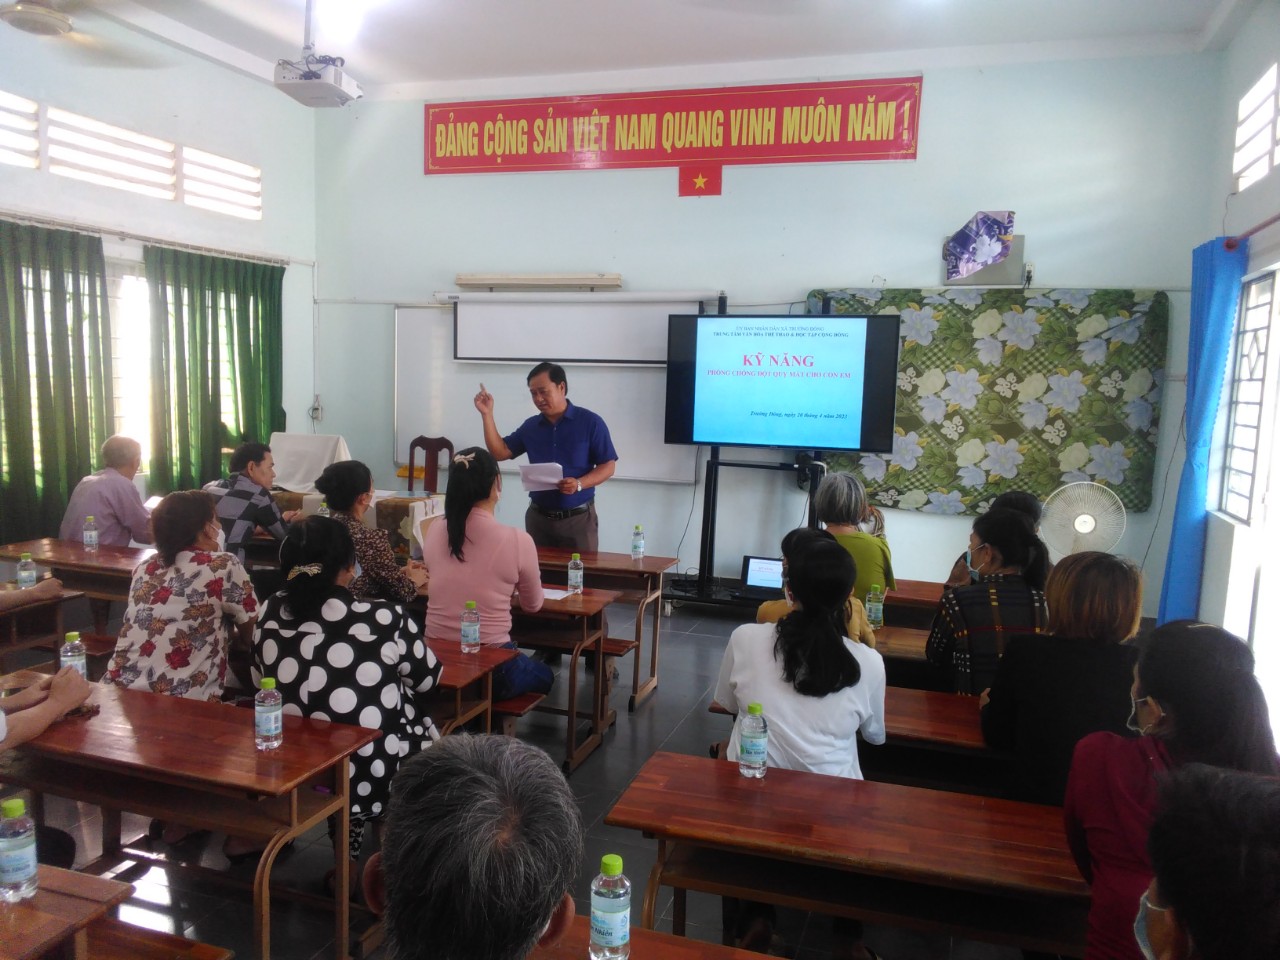 Ông Nguyễn Văn Cư - Phó Chủ tịch Trung tâm VHTT HTCĐ xã Trường Đông đang kiểm tra chuyên đề cho Đoàn kiểm tra dự